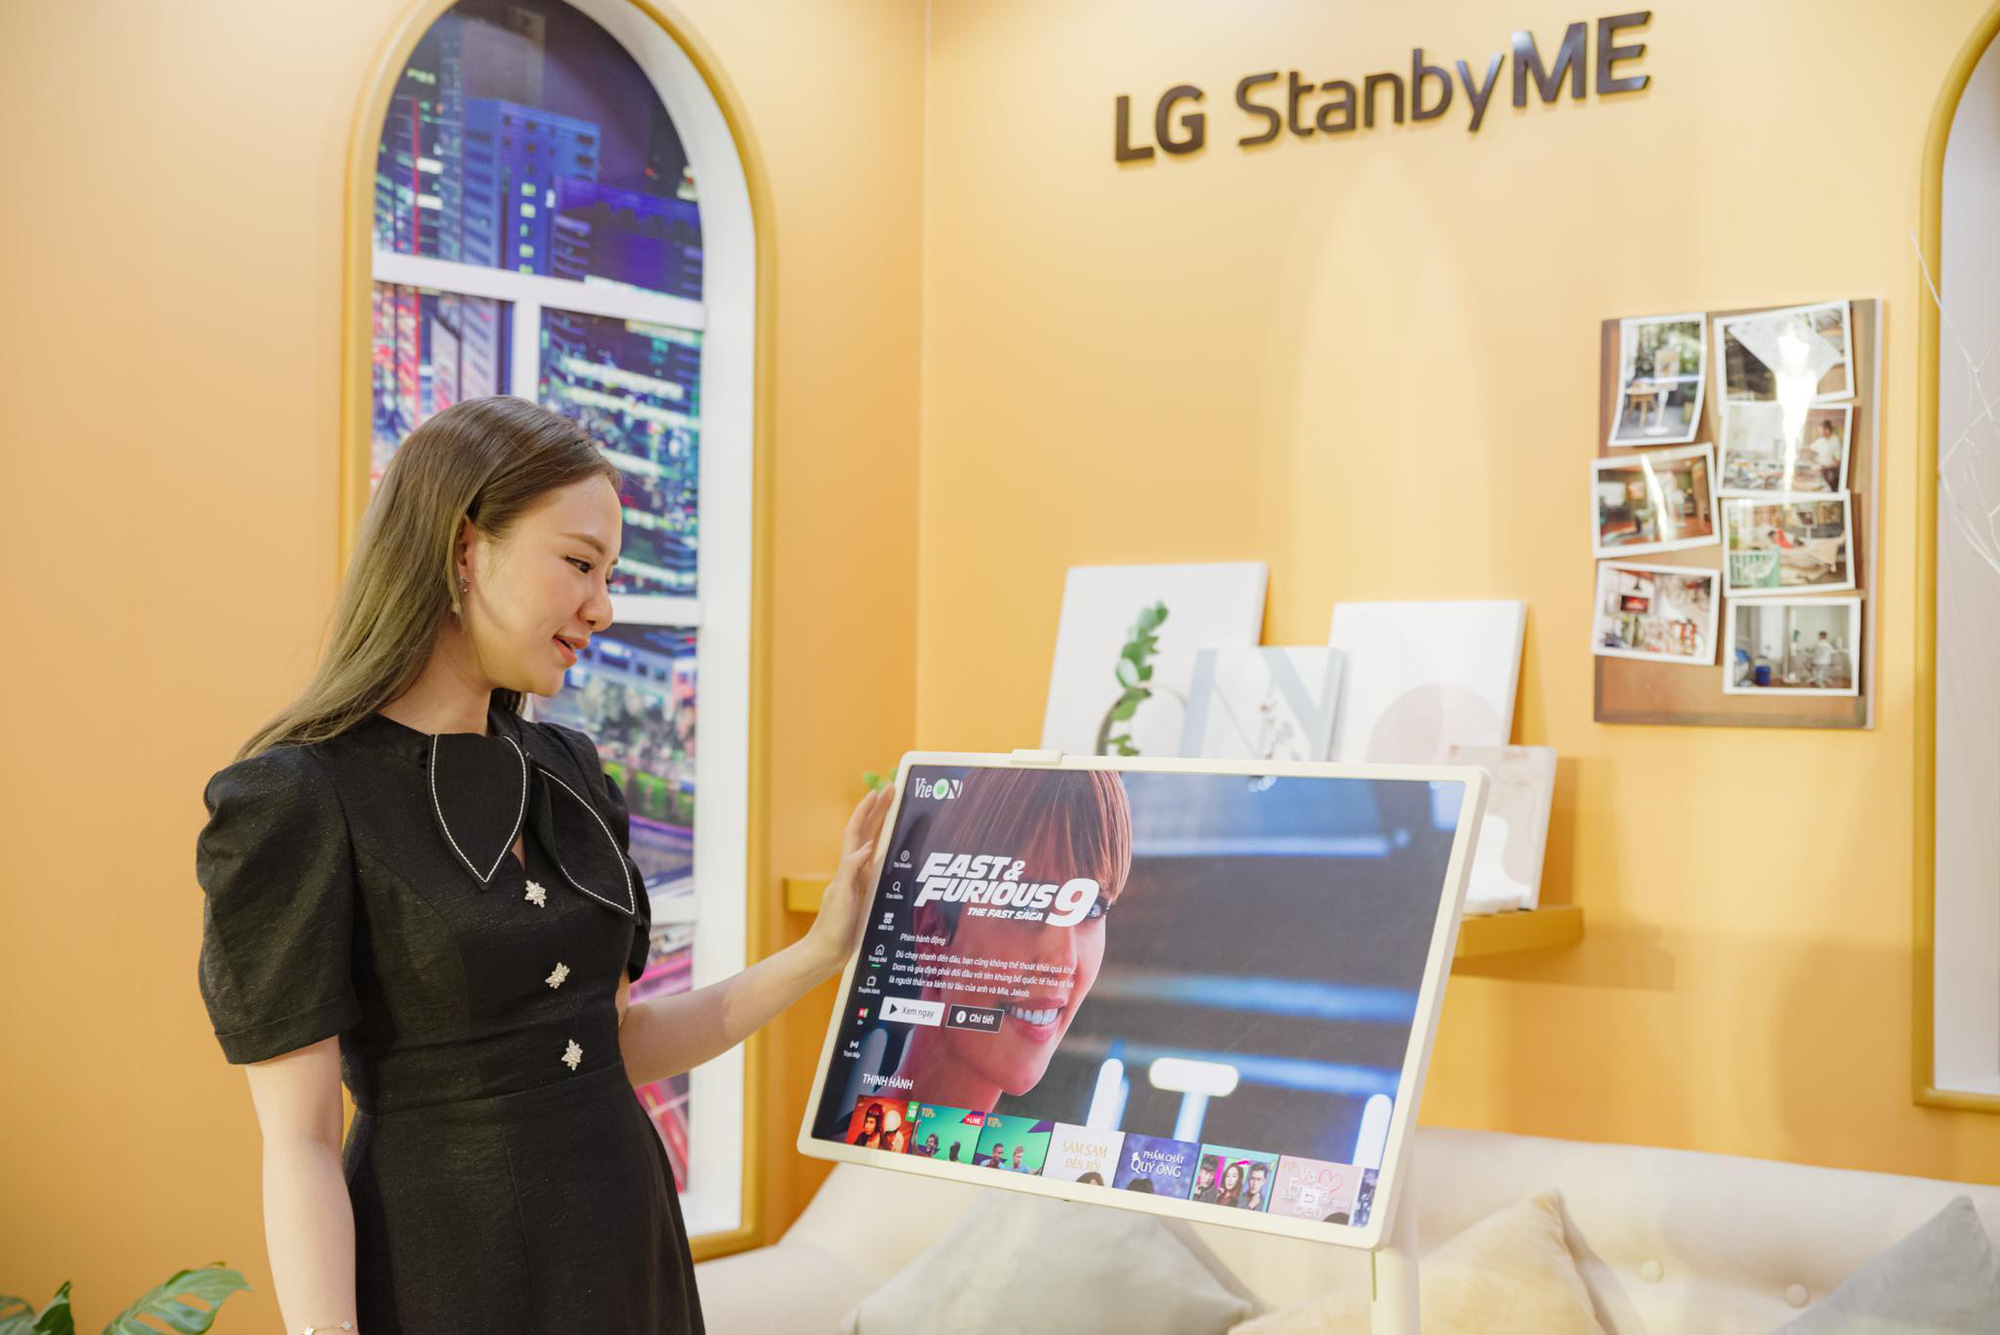 Người dùng Việt thích thú khi lần đầu trải nghiệm LG StanbyME: “Chưa từng thấy thiết bị cá nhân nào thú vị đến vậy” - Ảnh 6.